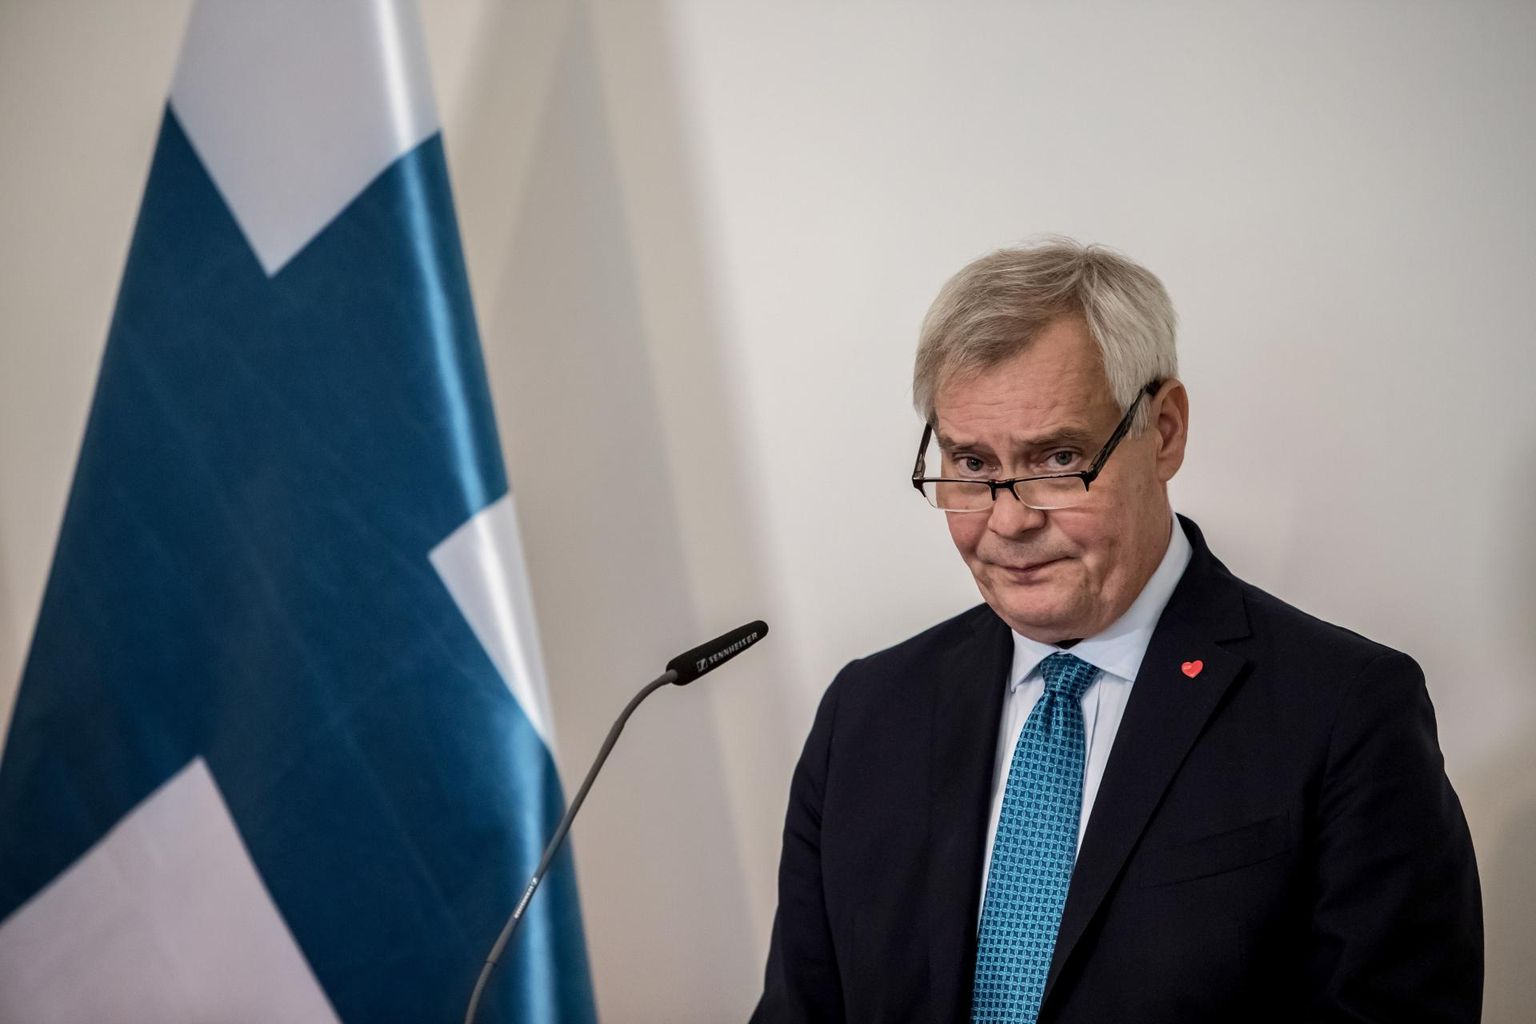 Soome peaministri Antti Rinne tööhõiveplaanid muutuvad iga päevaga keerulisemaks, kuna jahenev majandus ennustab kehvemaid aegu.